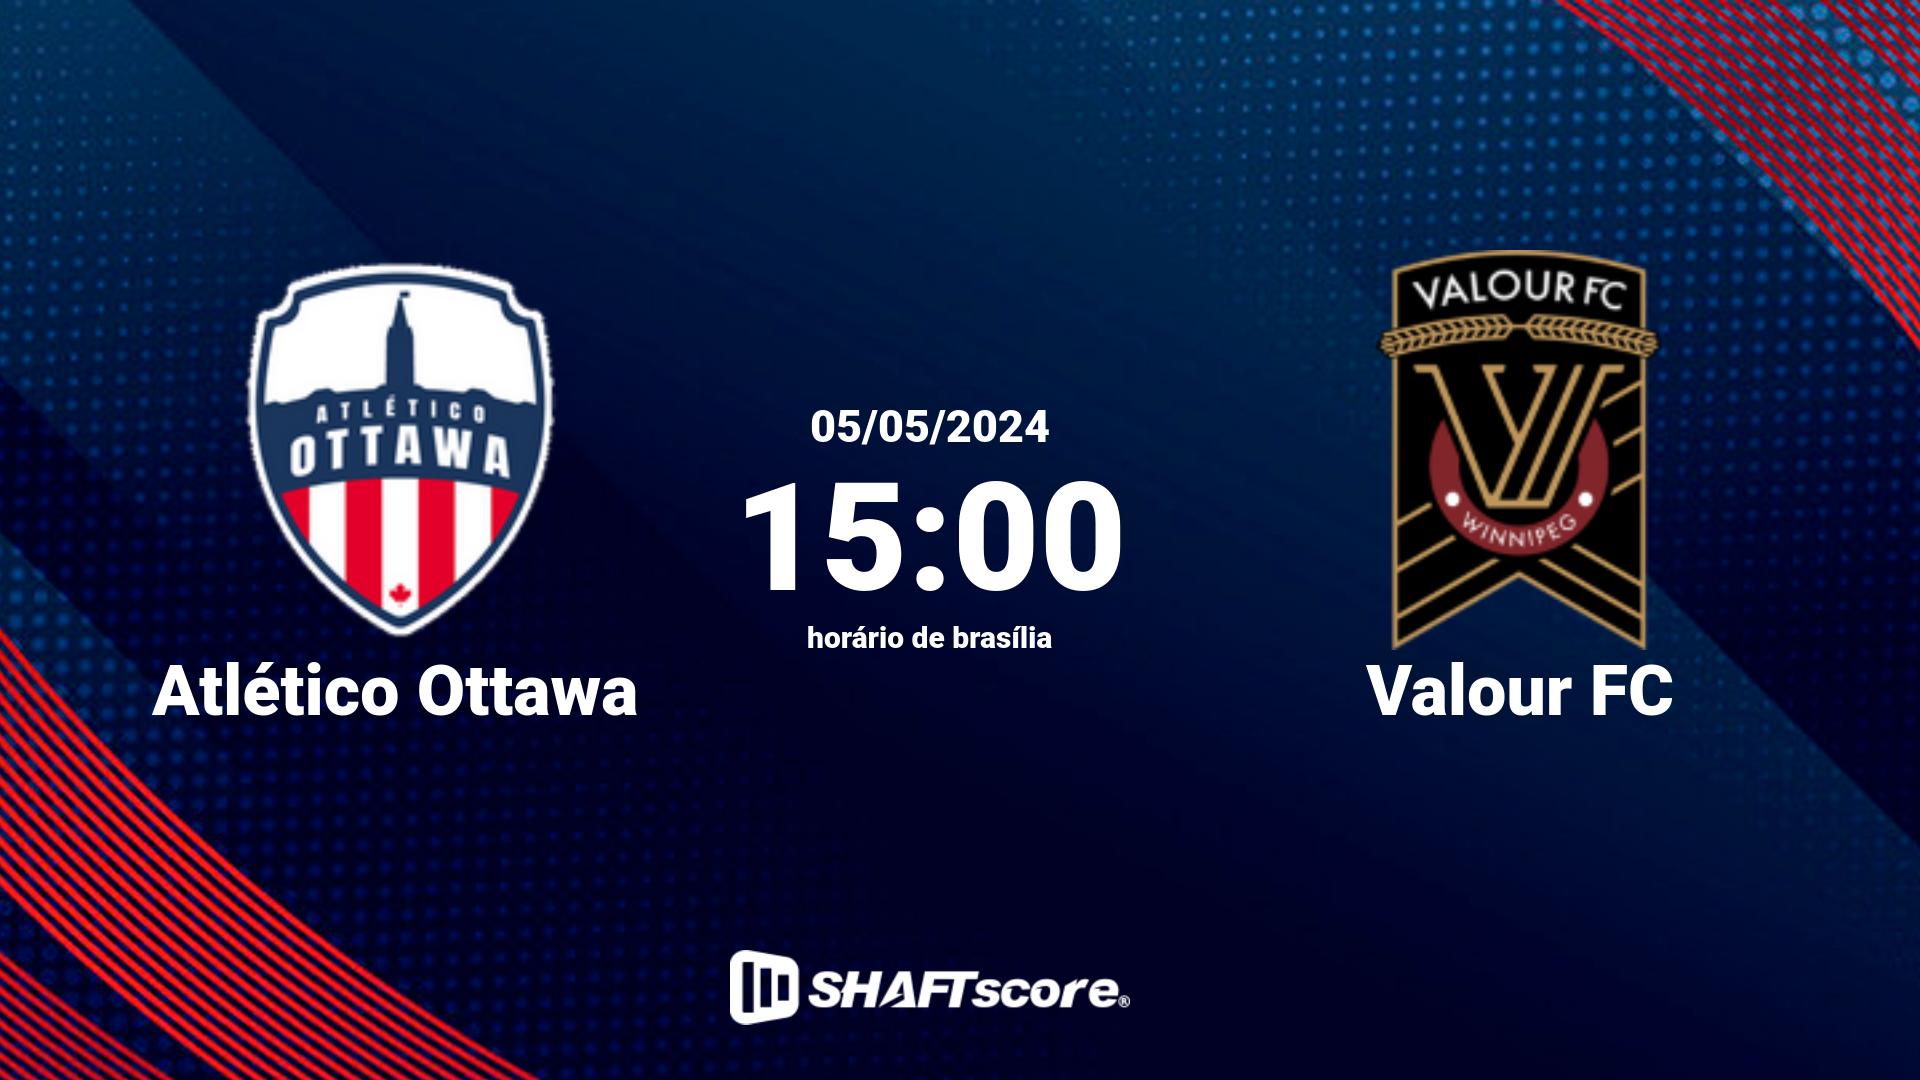 Estatísticas do jogo Atlético Ottawa vs Valour FC 05.05 15:00